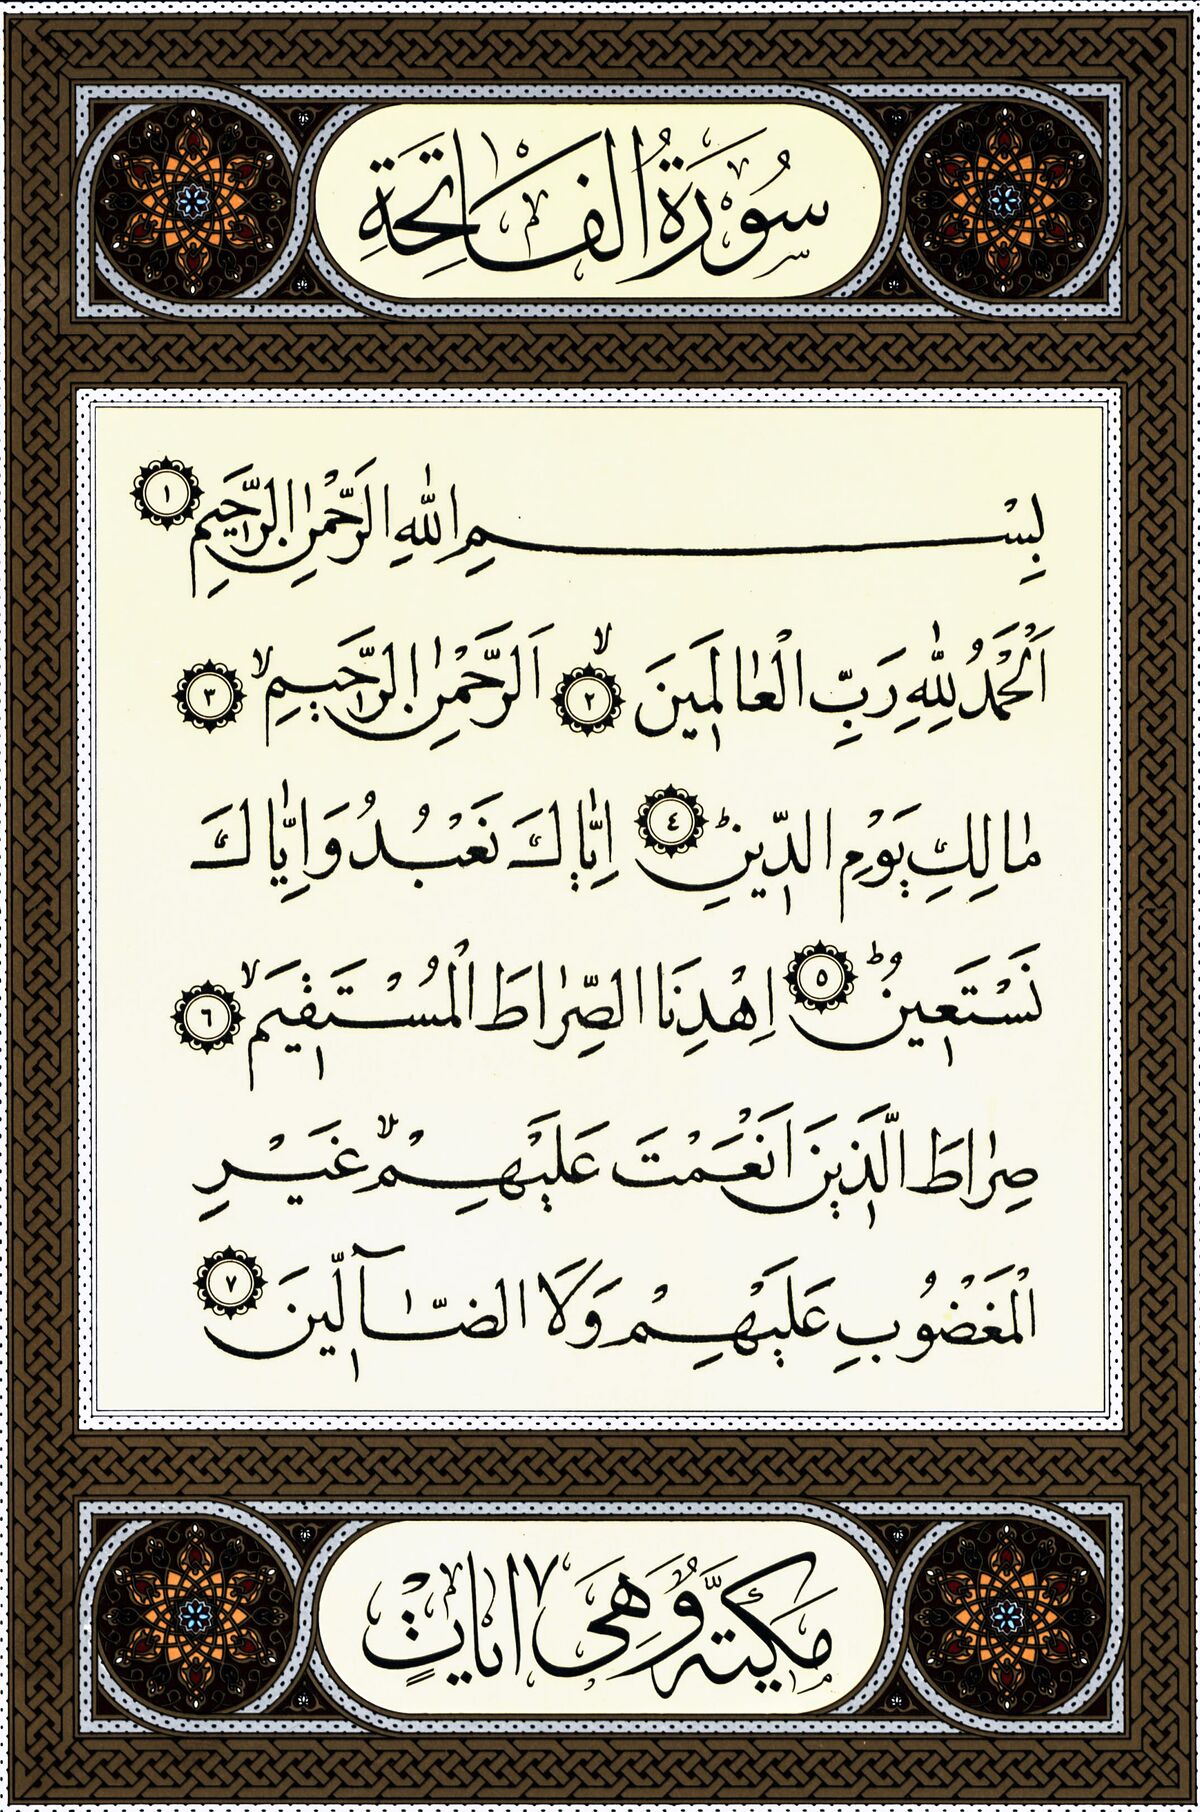 كم عدد السور القرآنية التي بدأت بثلاث حروف